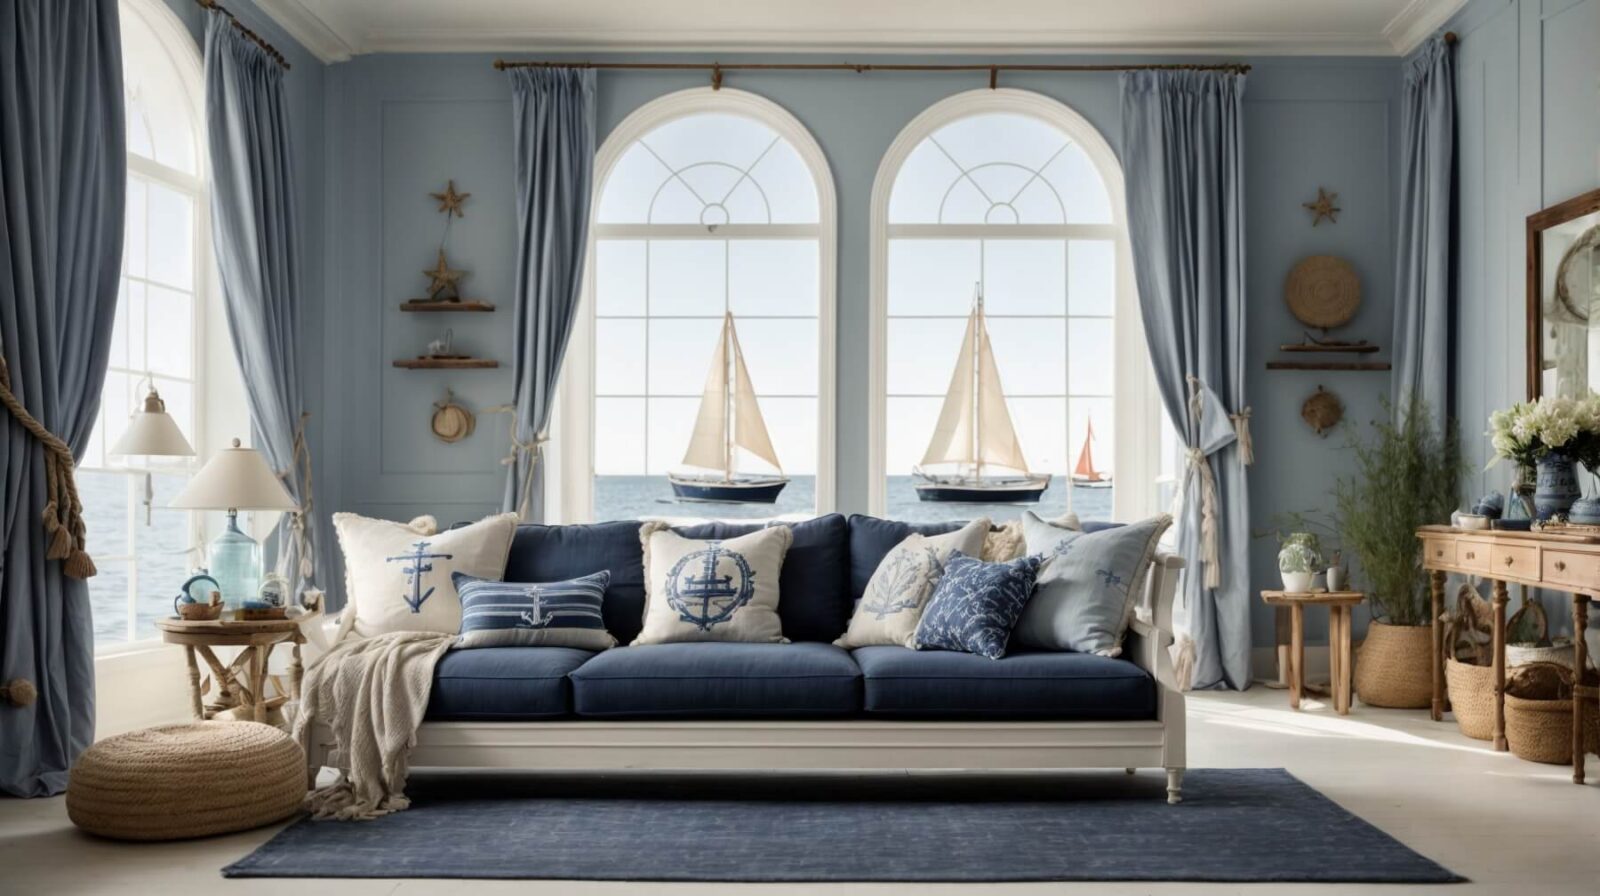 Sala de estar aconchegante com decoração náutica, apresentando sofá azul, almofadas com tema marítimo e acessórios decorativos náuticos.